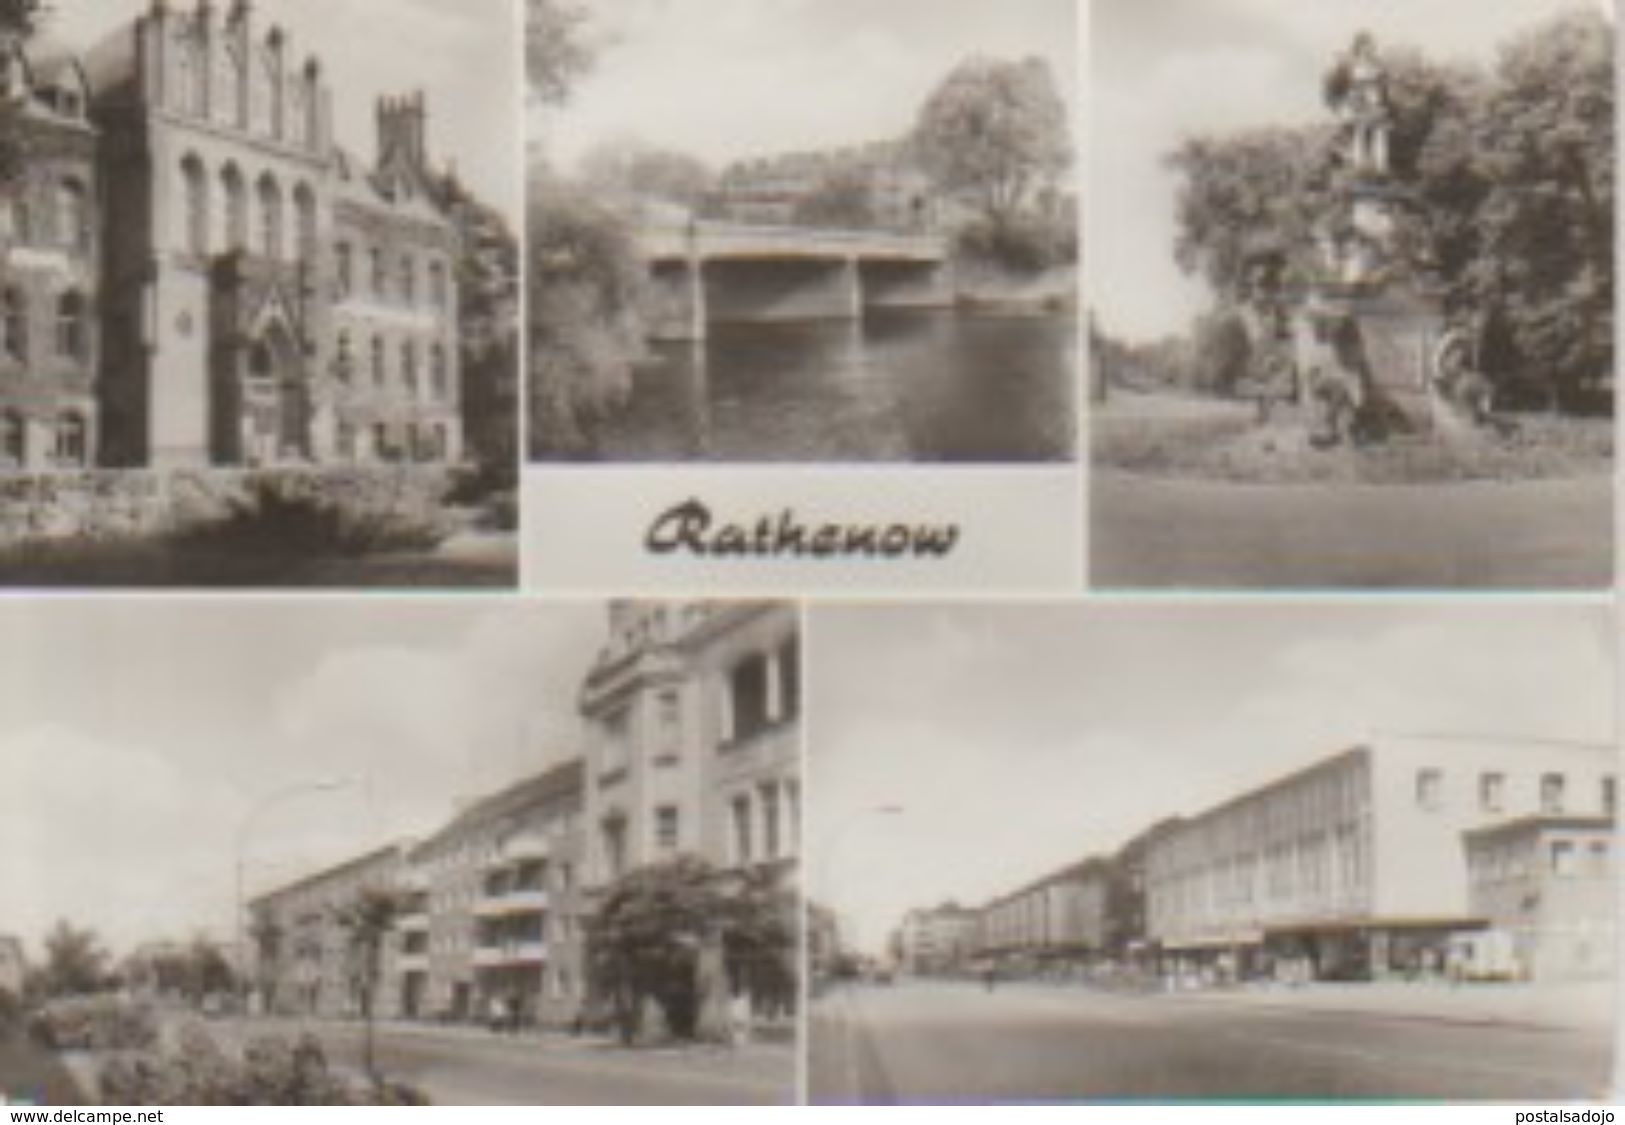 (DE1750) RATHENOW - Rathenow